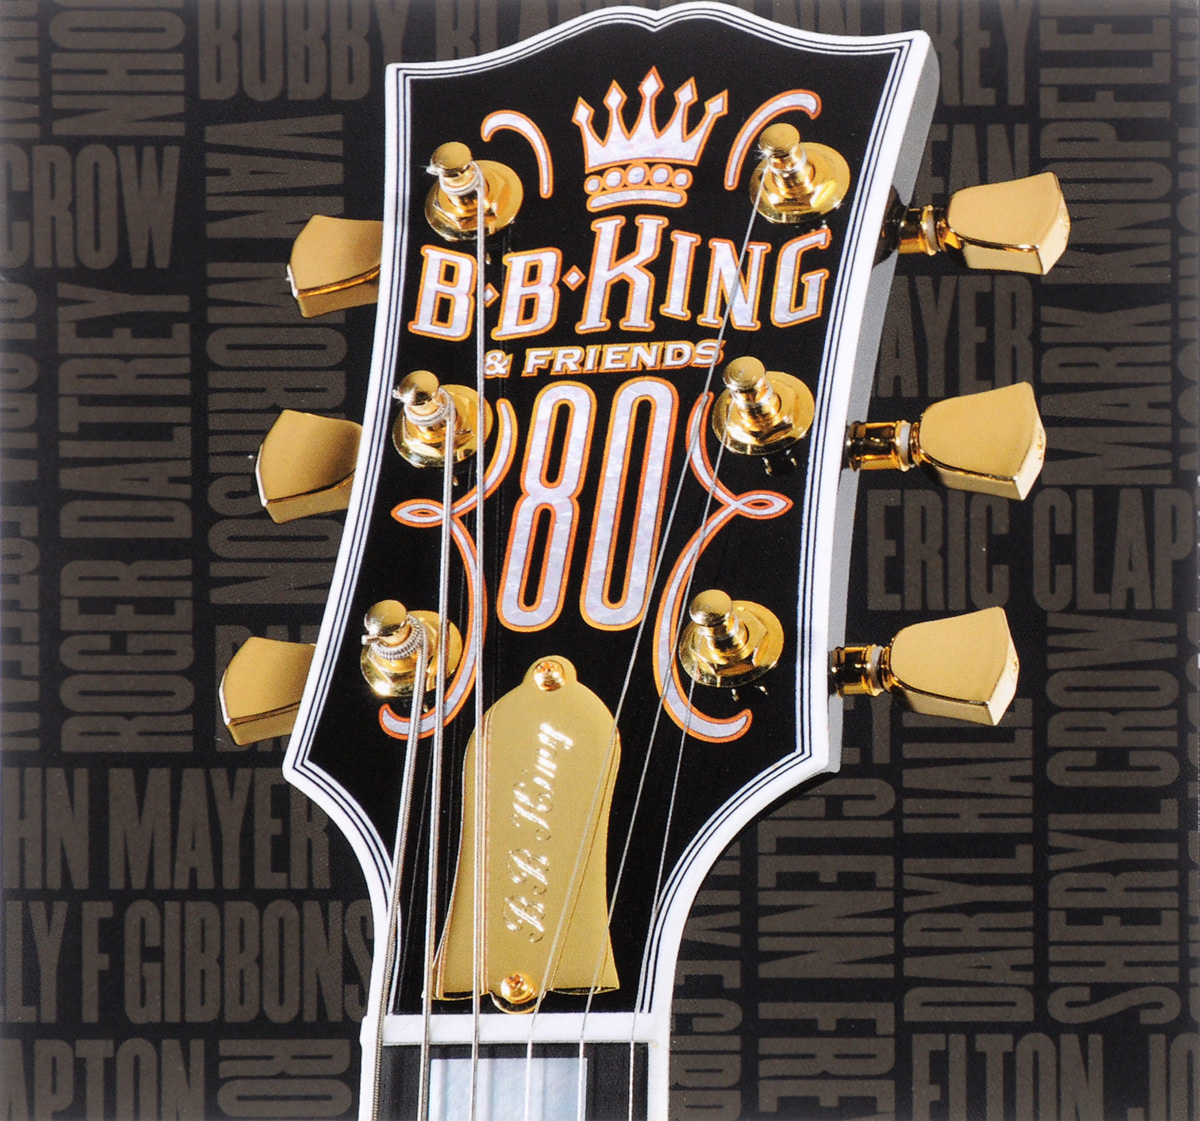 B.B. King & Friends. 80